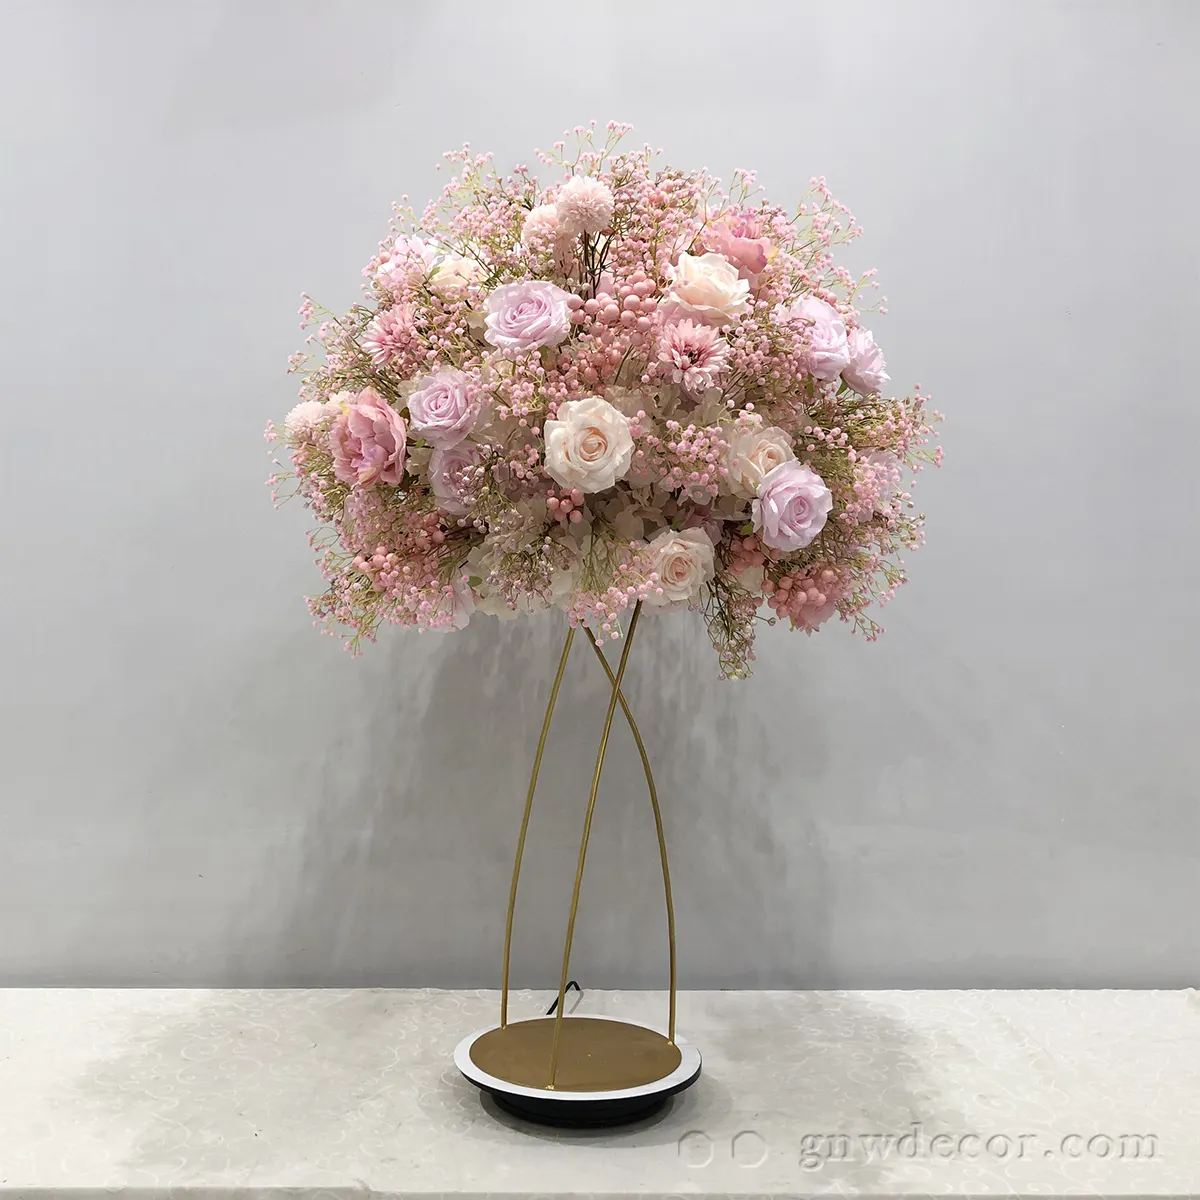 GNW Venue tisch dekorationen rose blume ball mittelstücke anordnung mit schöne pfingstrose